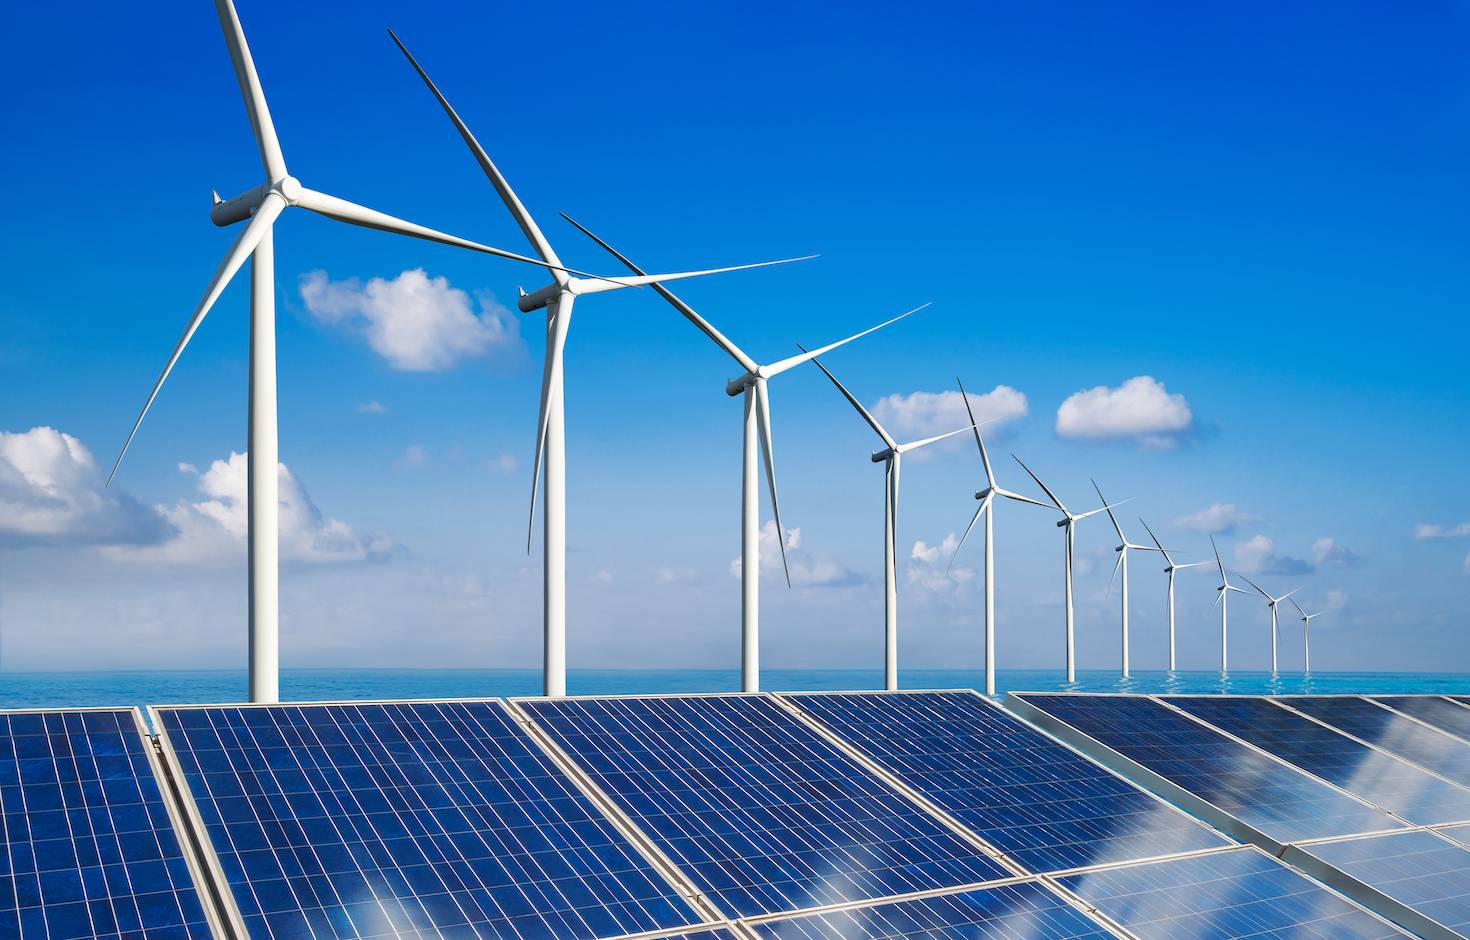 克罗地亚经济商会调研当前克可再生能源项目发展现状